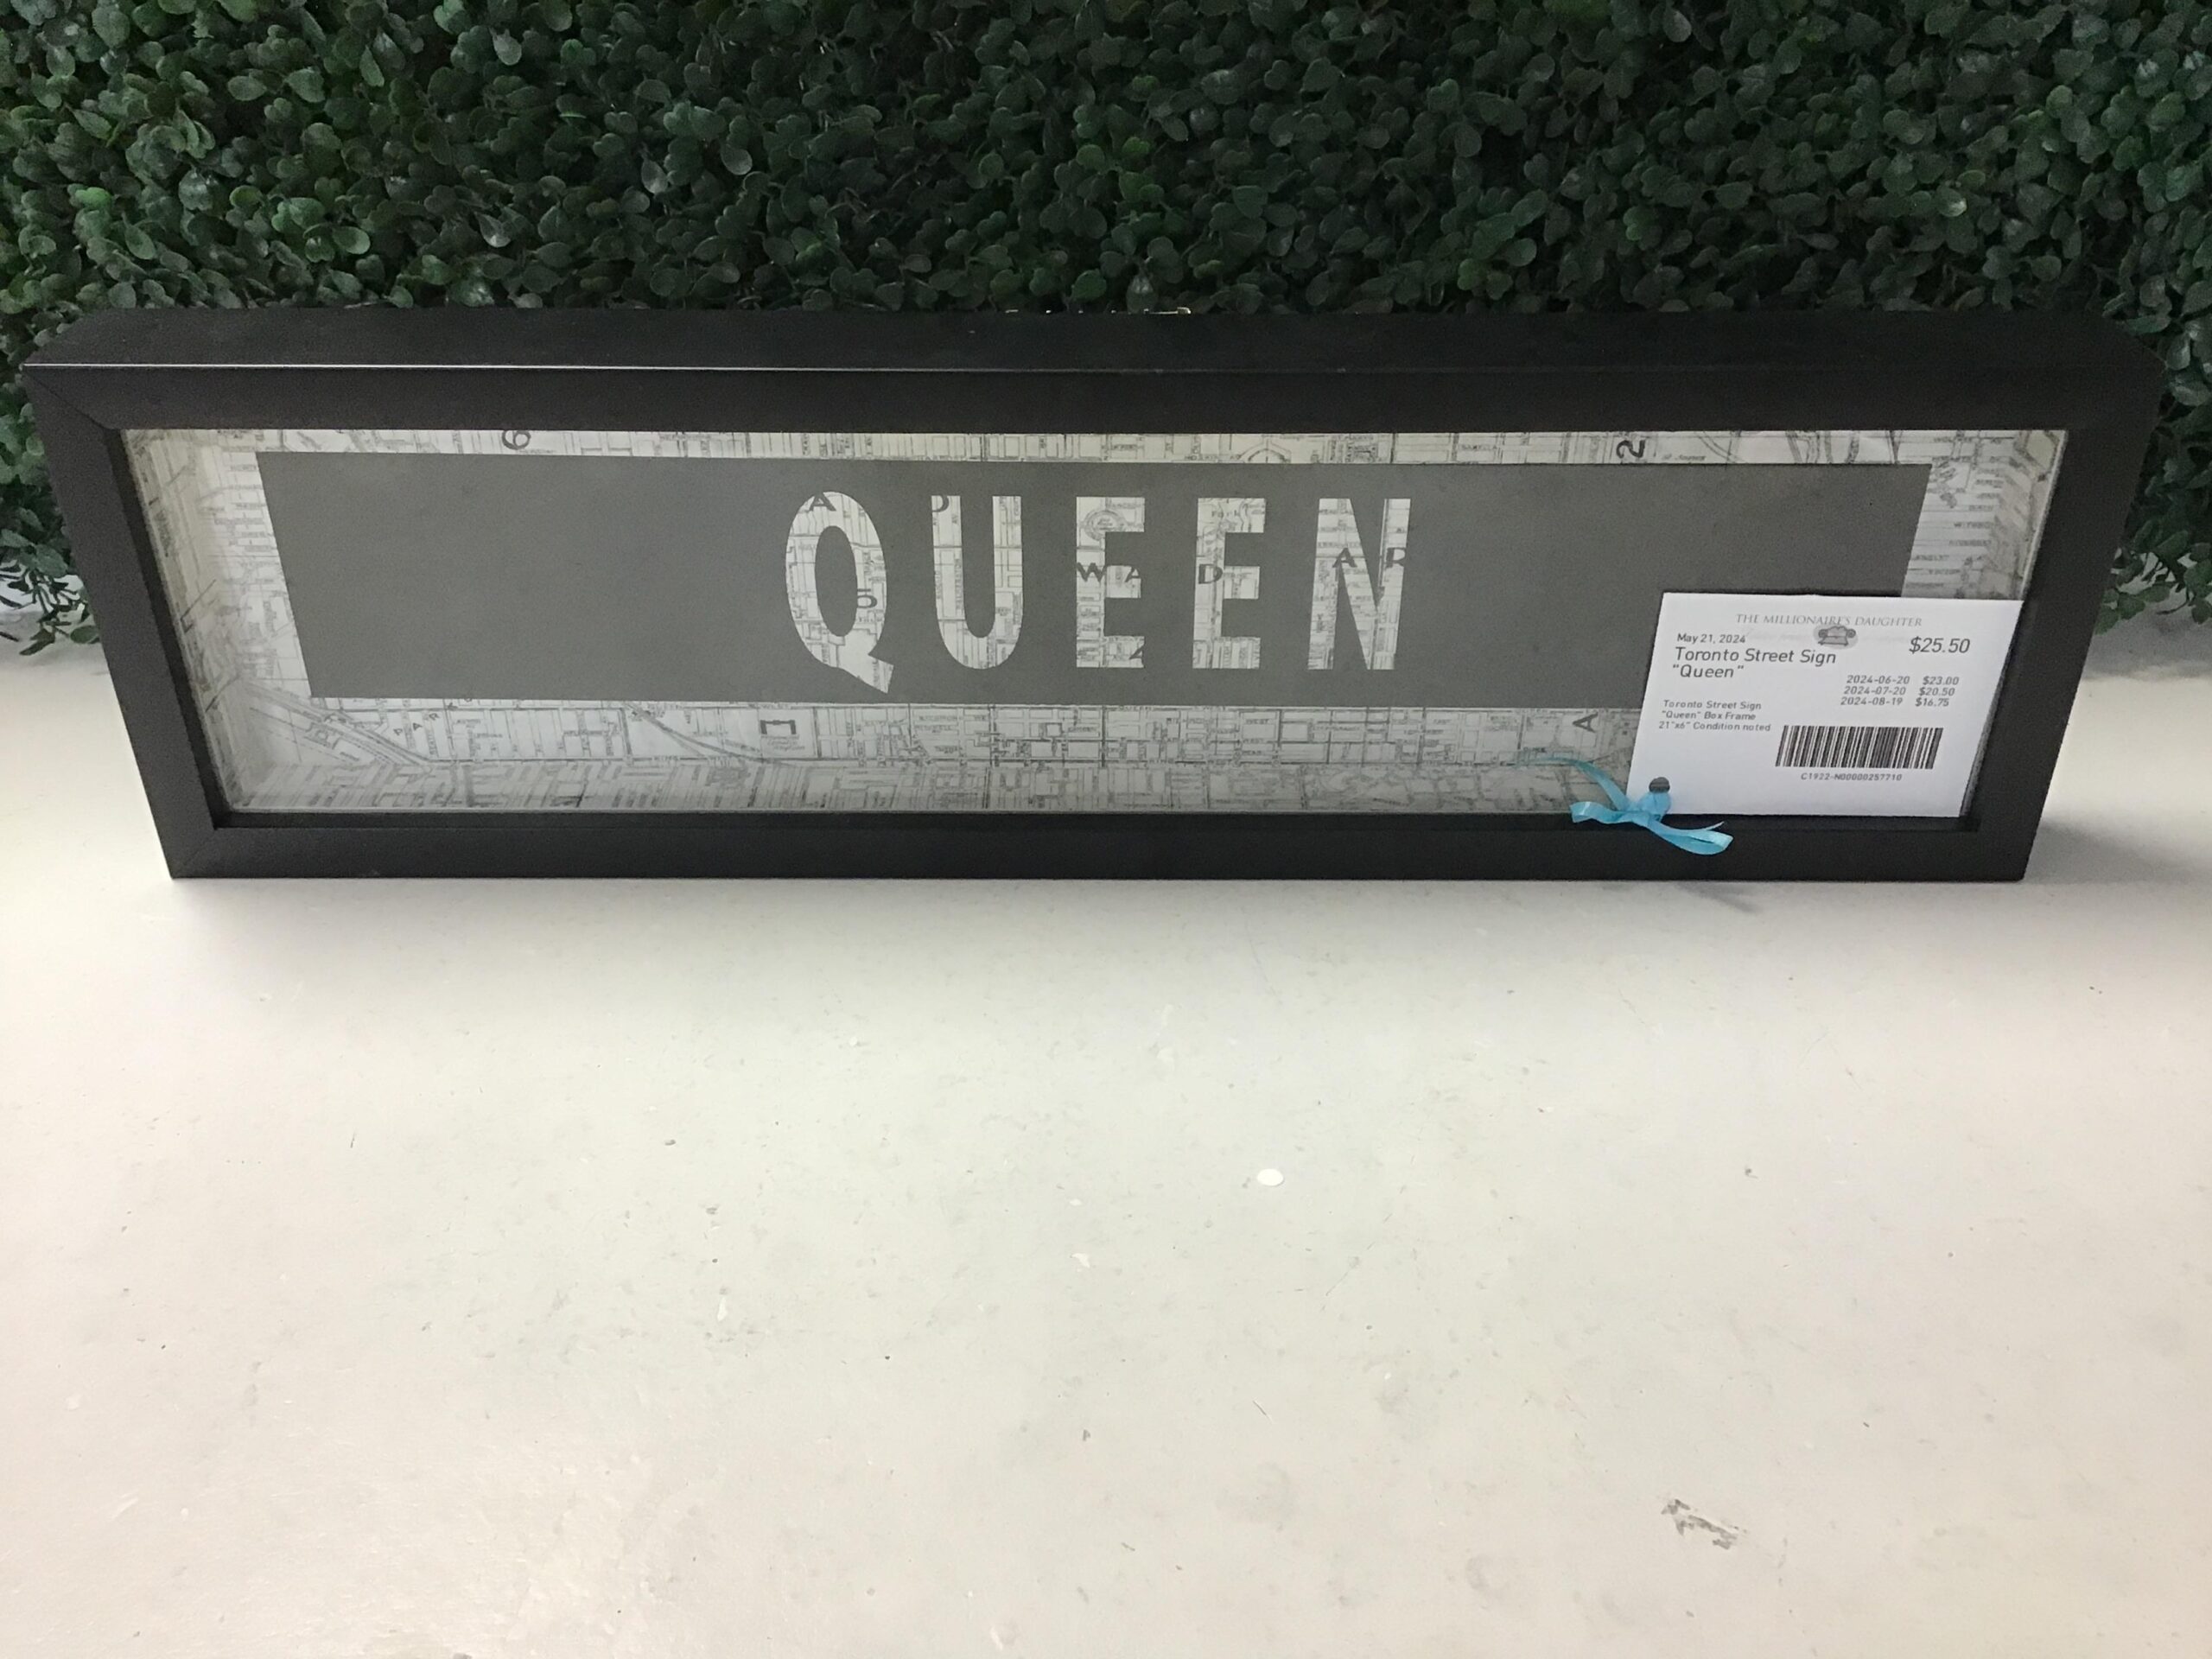 Toronto Street Sign “Queen”